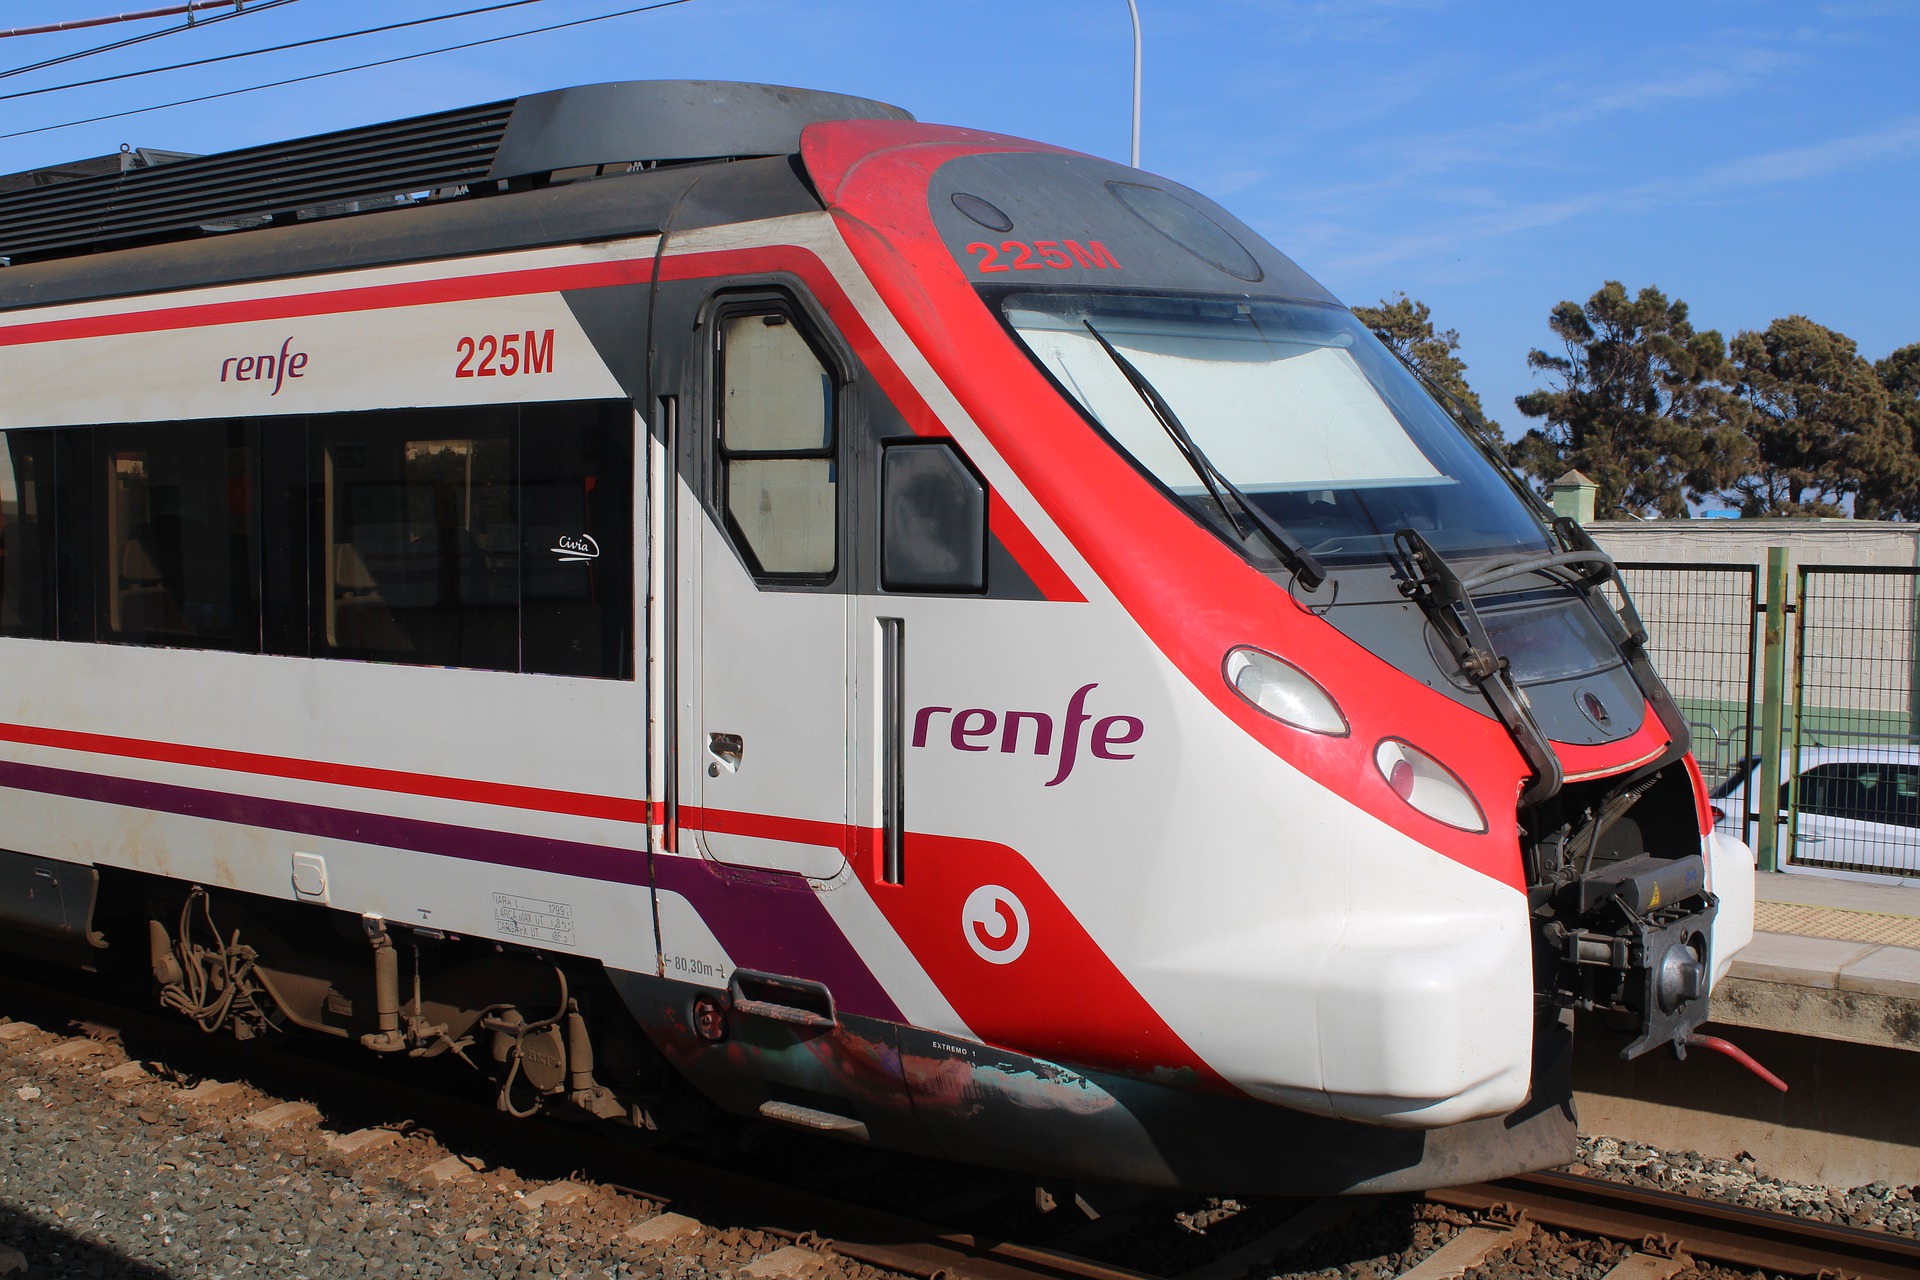 El jefe de la red ferroviaria española, Renfe, reducirá los precios de los boletos de tren